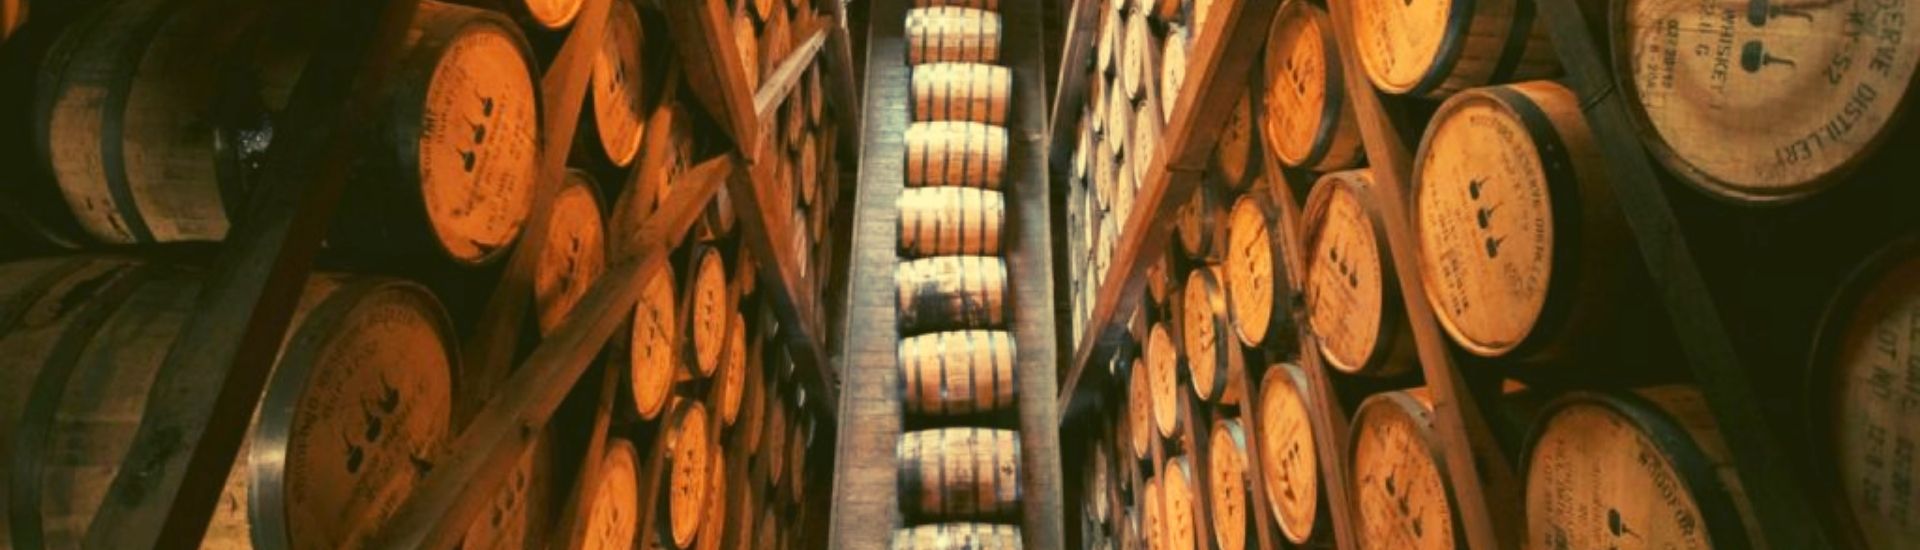 woodford reserve bourbon barrels